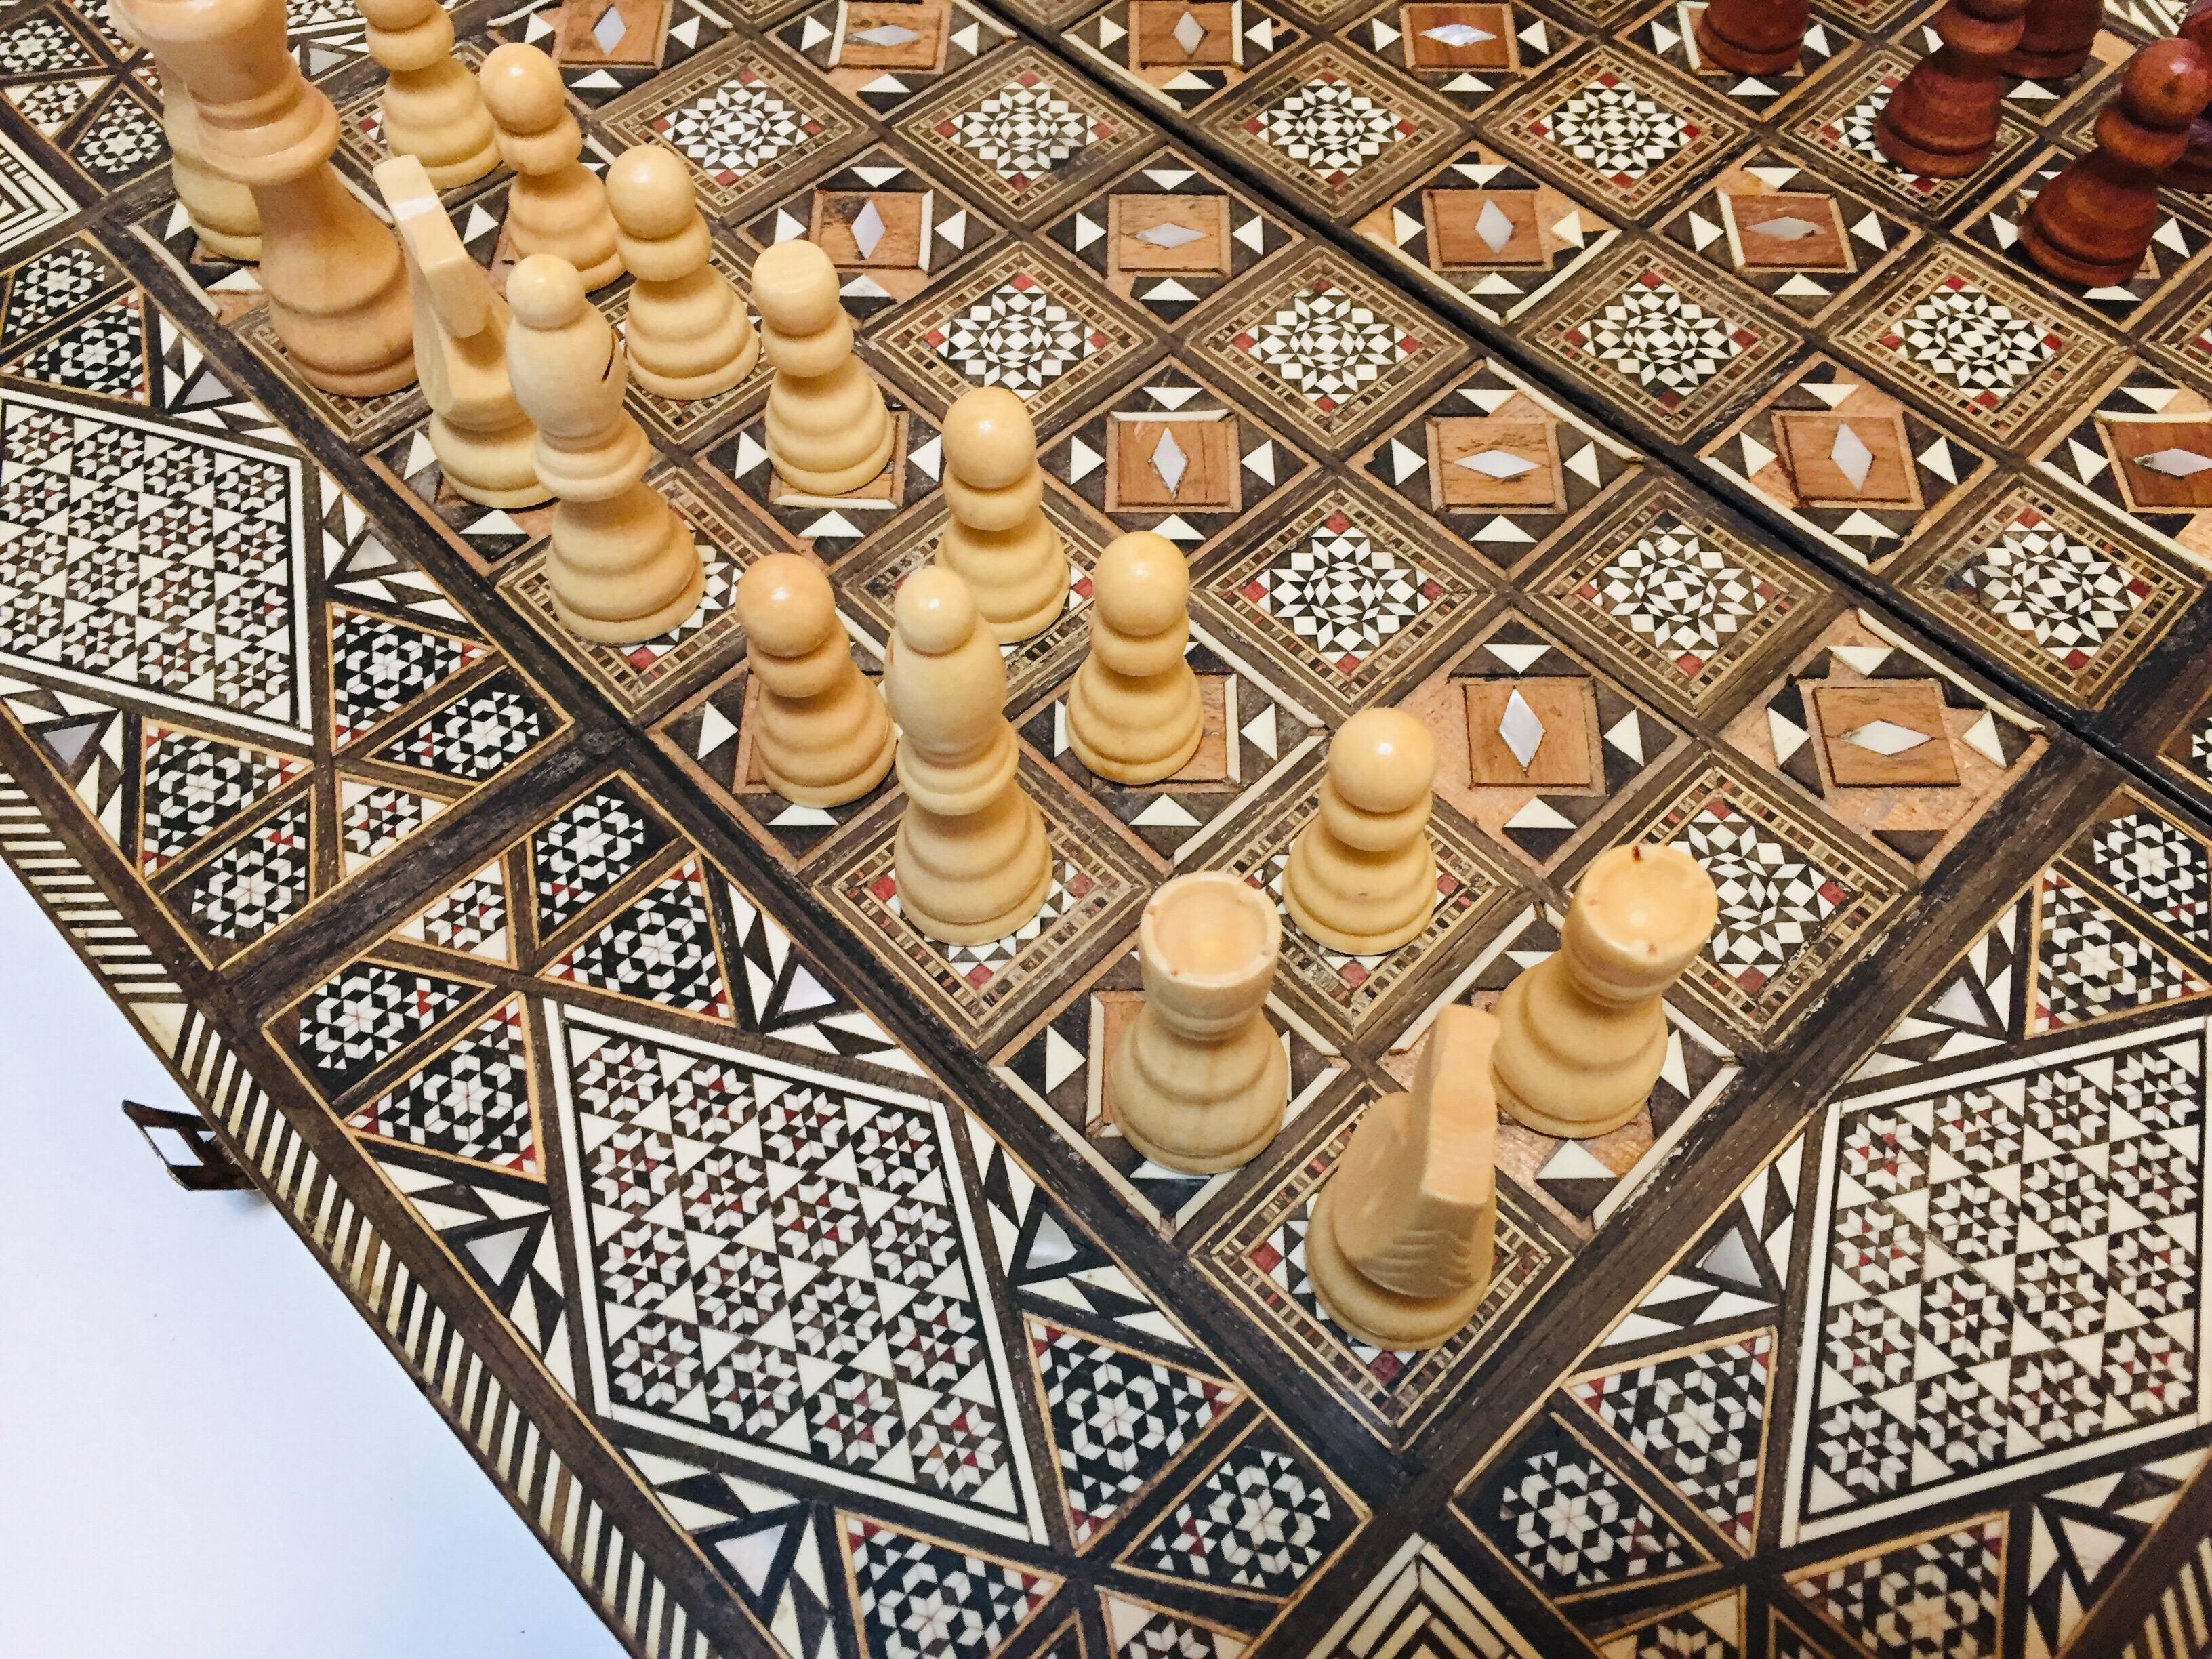 Vieux grand jeu complet de backgammon et d'echecs en mosaique incrustee syrienne 7